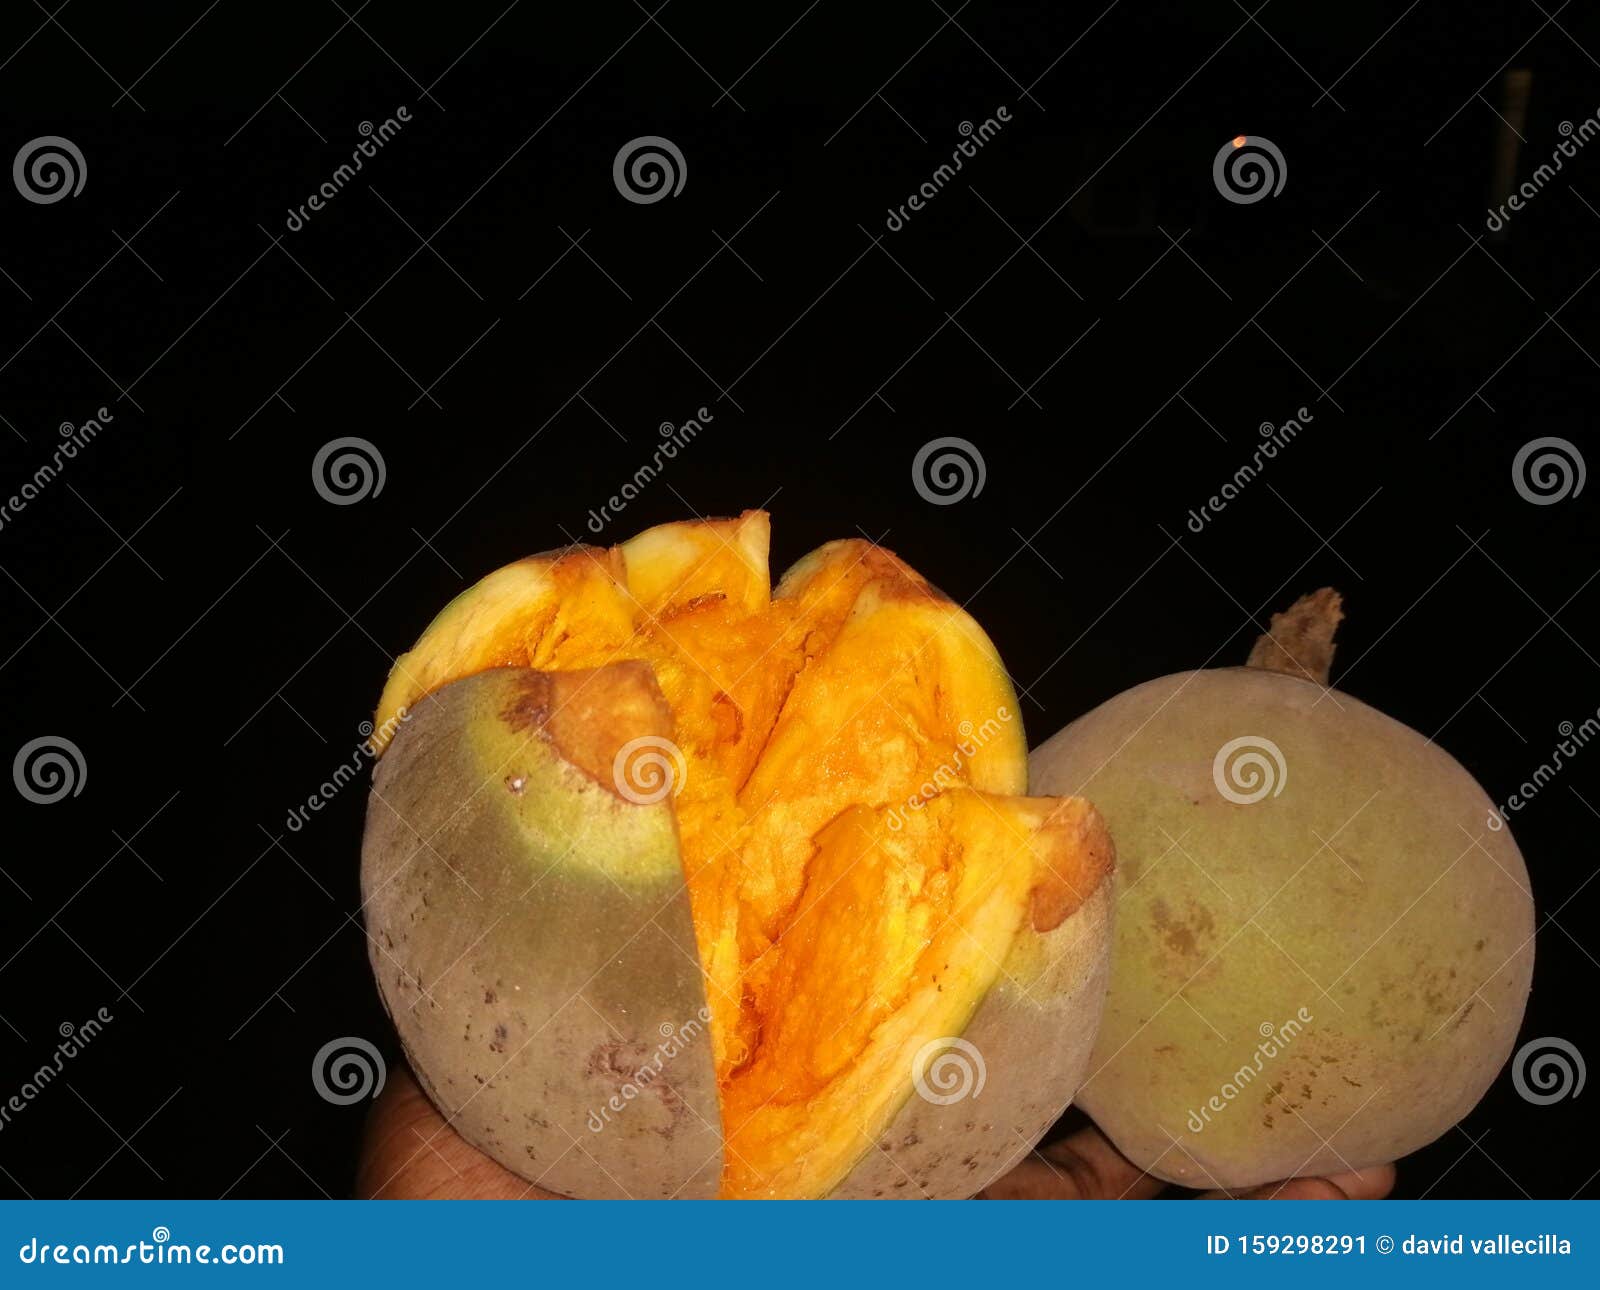 dulce cultura orange fruit